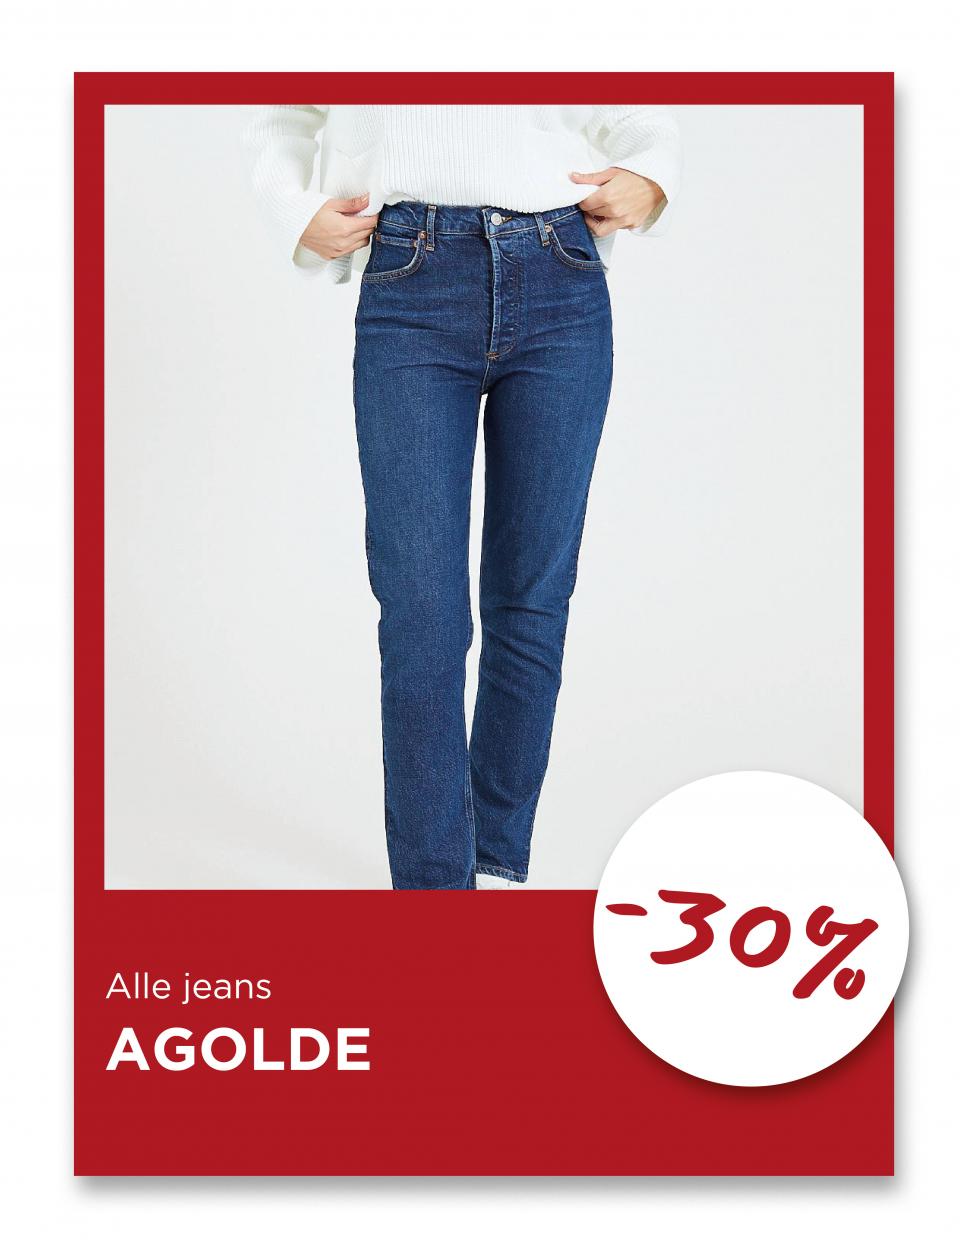 Alle jeans fra Agolde, -30%